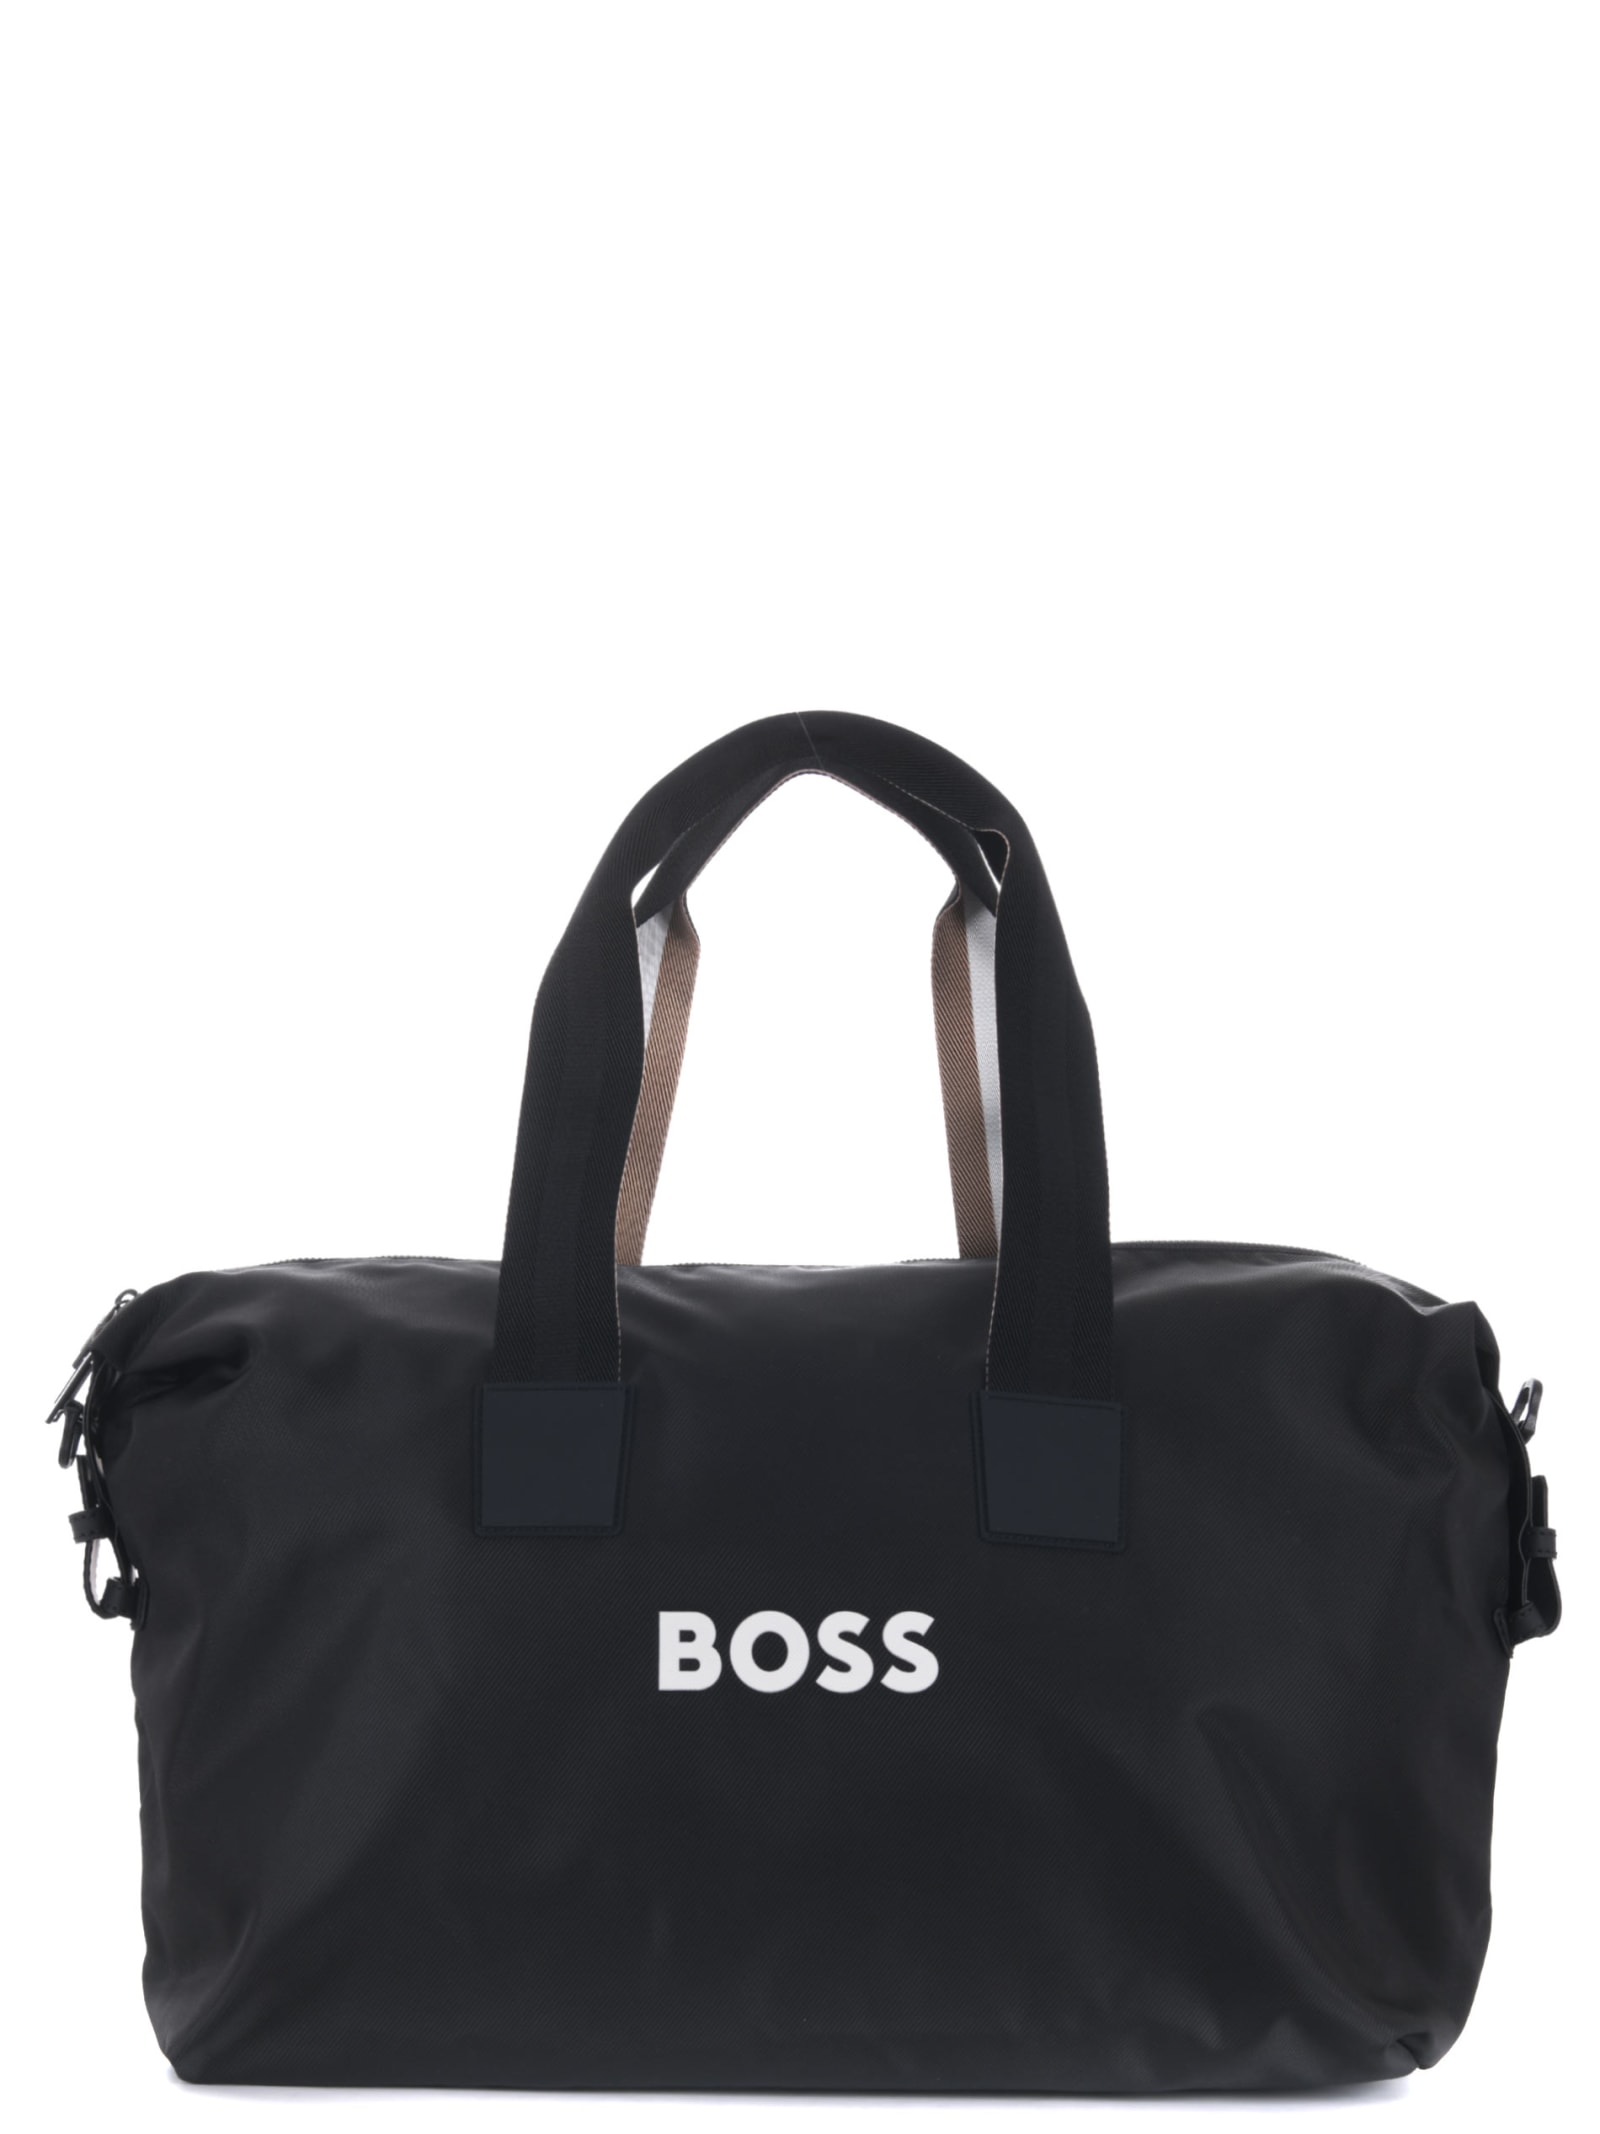 Hugo Boss Boss Daffle Bag In Black